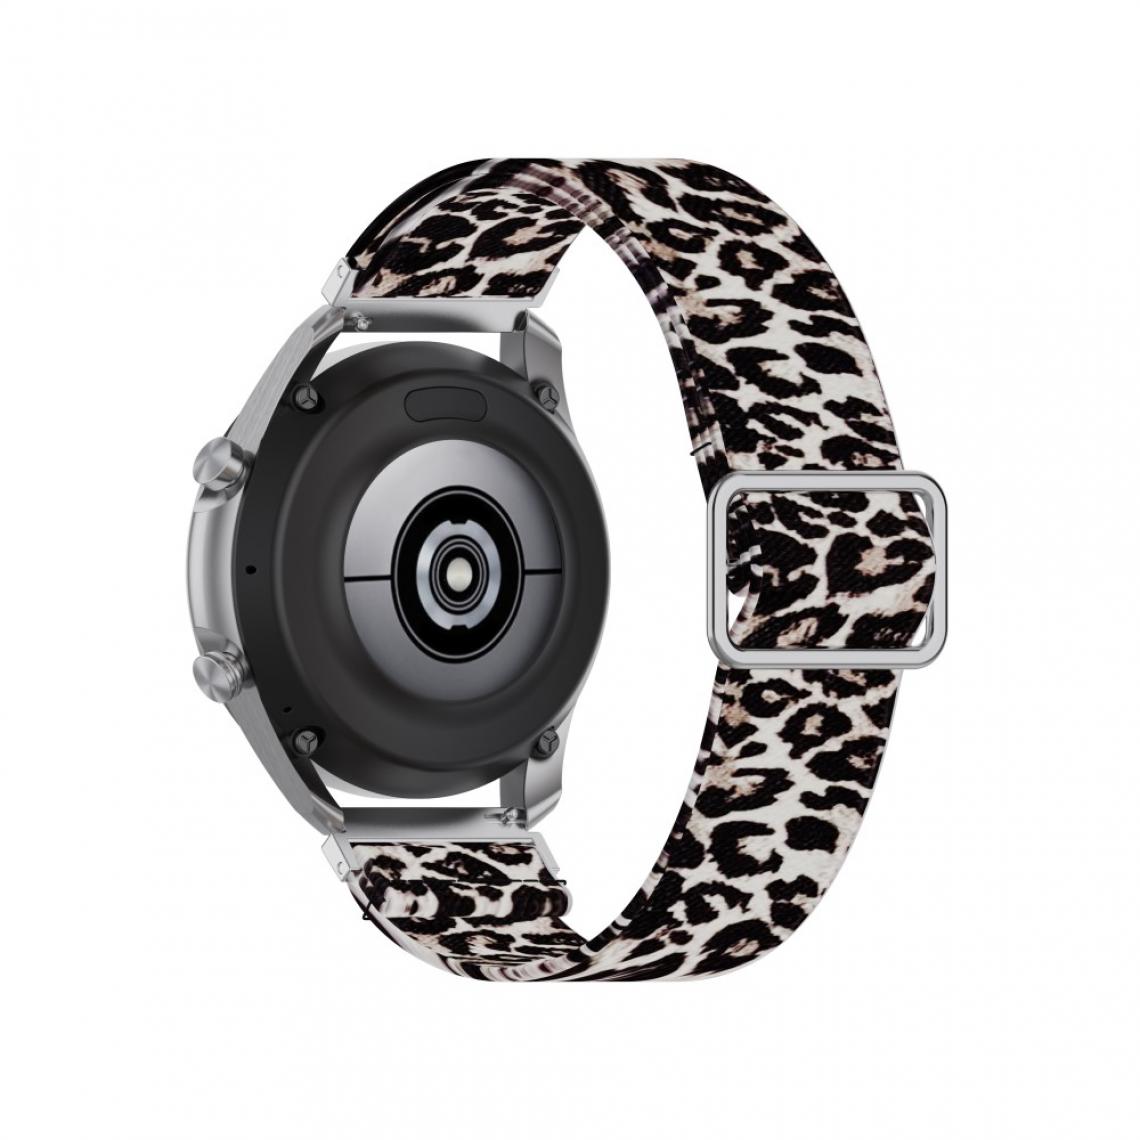 Other - Bracelet en nylon Motif Imprimé Réglable 20mm imprimé léopard pour votre Samsung Galaxy Watch3 41mm/Watch Active - Accessoires bracelet connecté